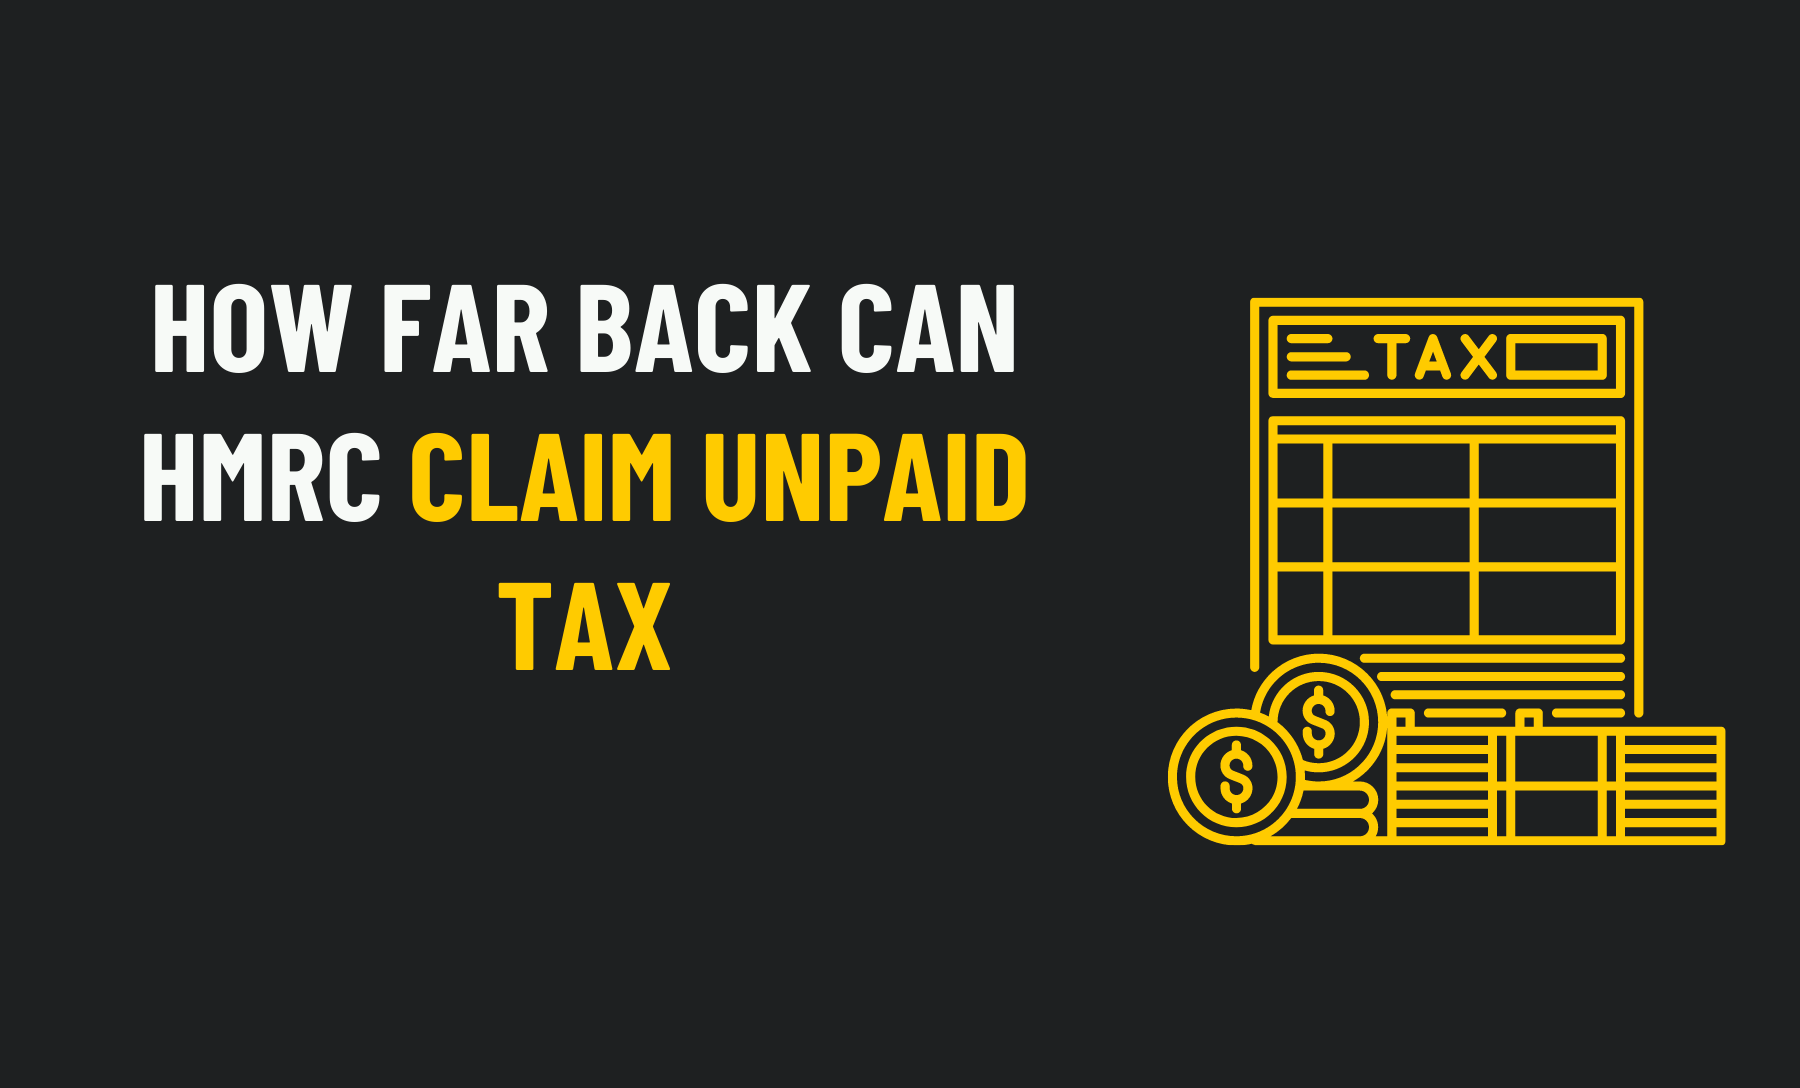 HMRC Claim Unpaid Tax